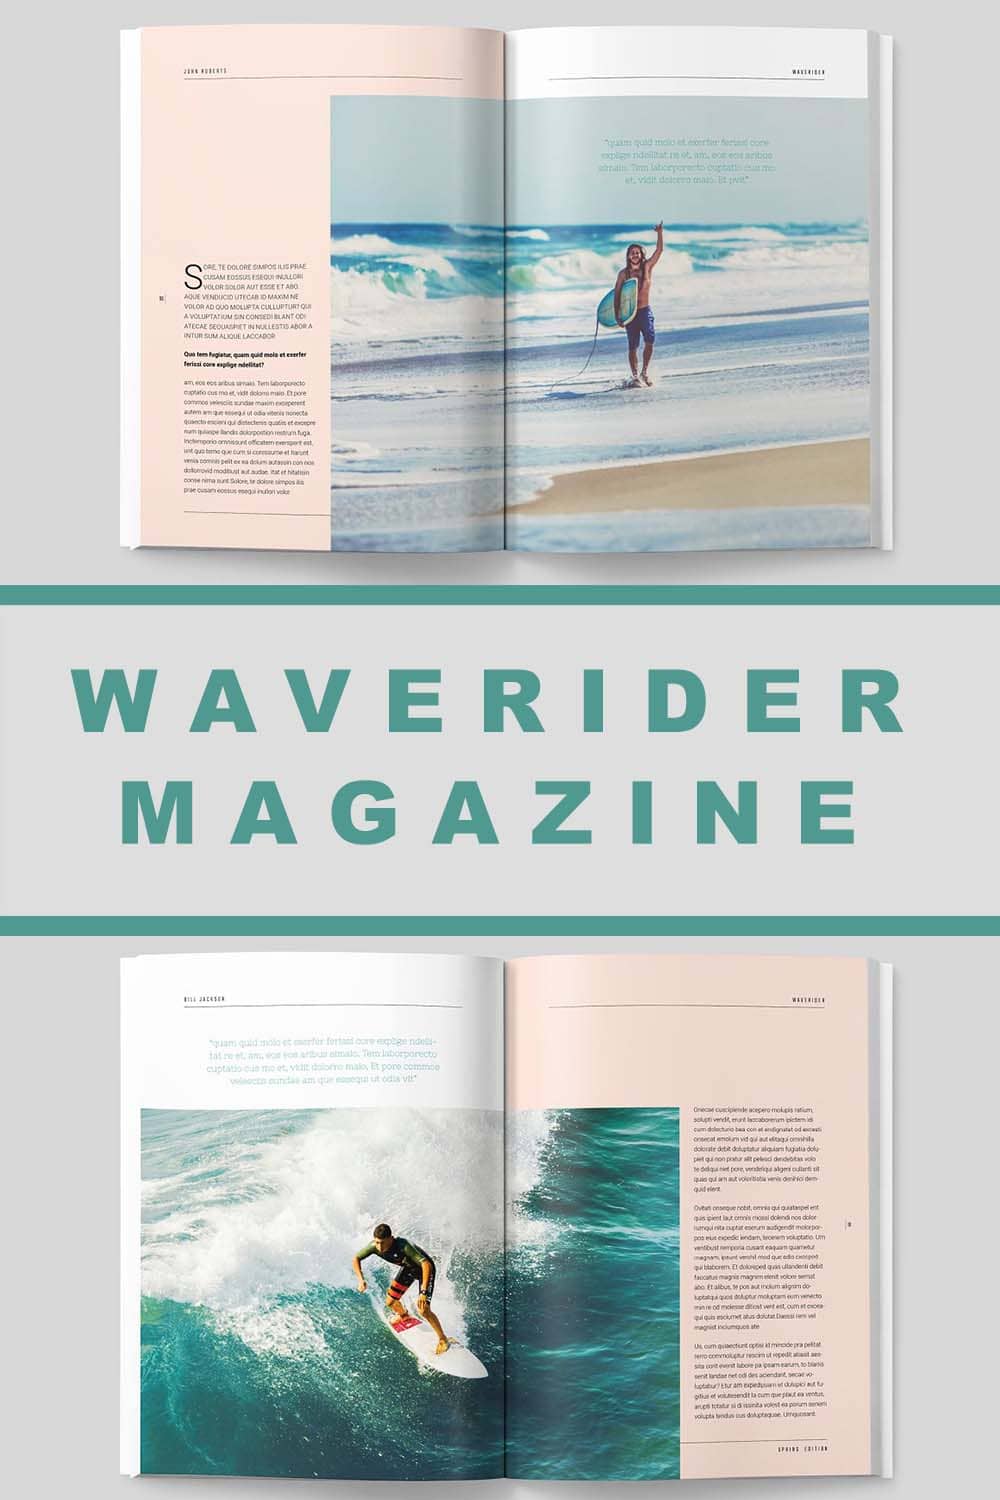 waverider magazine pinterest image.